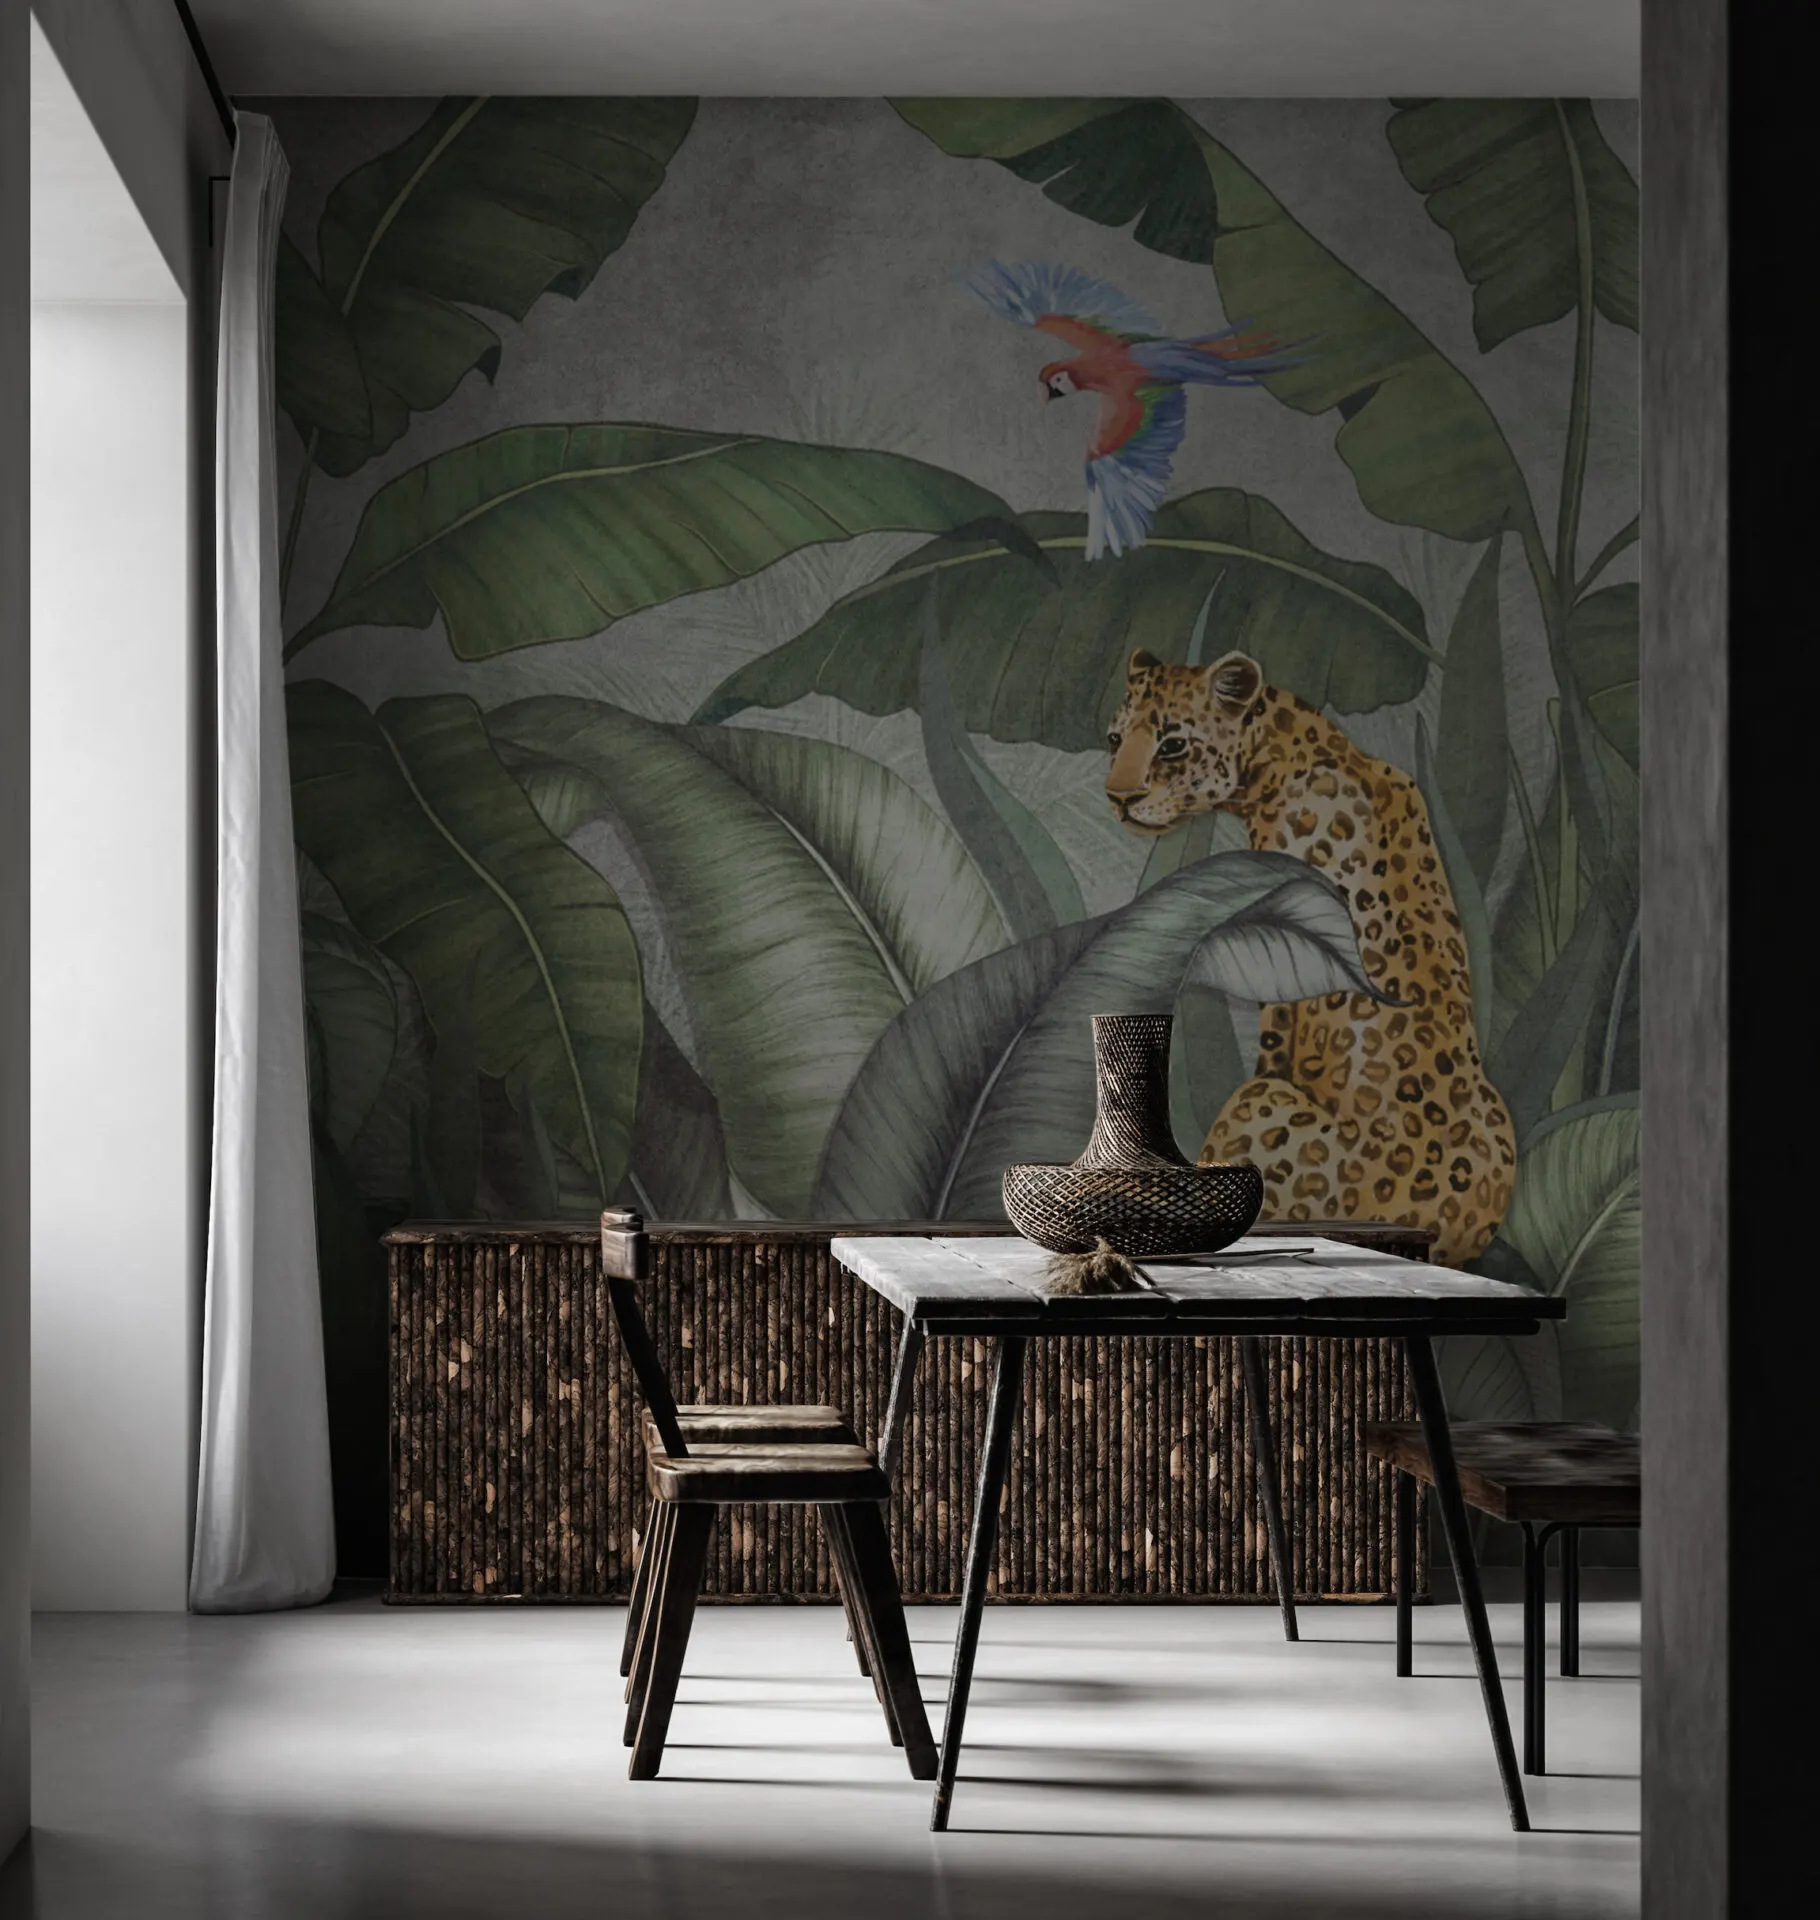 Tisch mit Stühlen vor Tapete, auf welcher Leopard, ein Vogel und Blätter von Dschungelpflanzen zu sehen sind